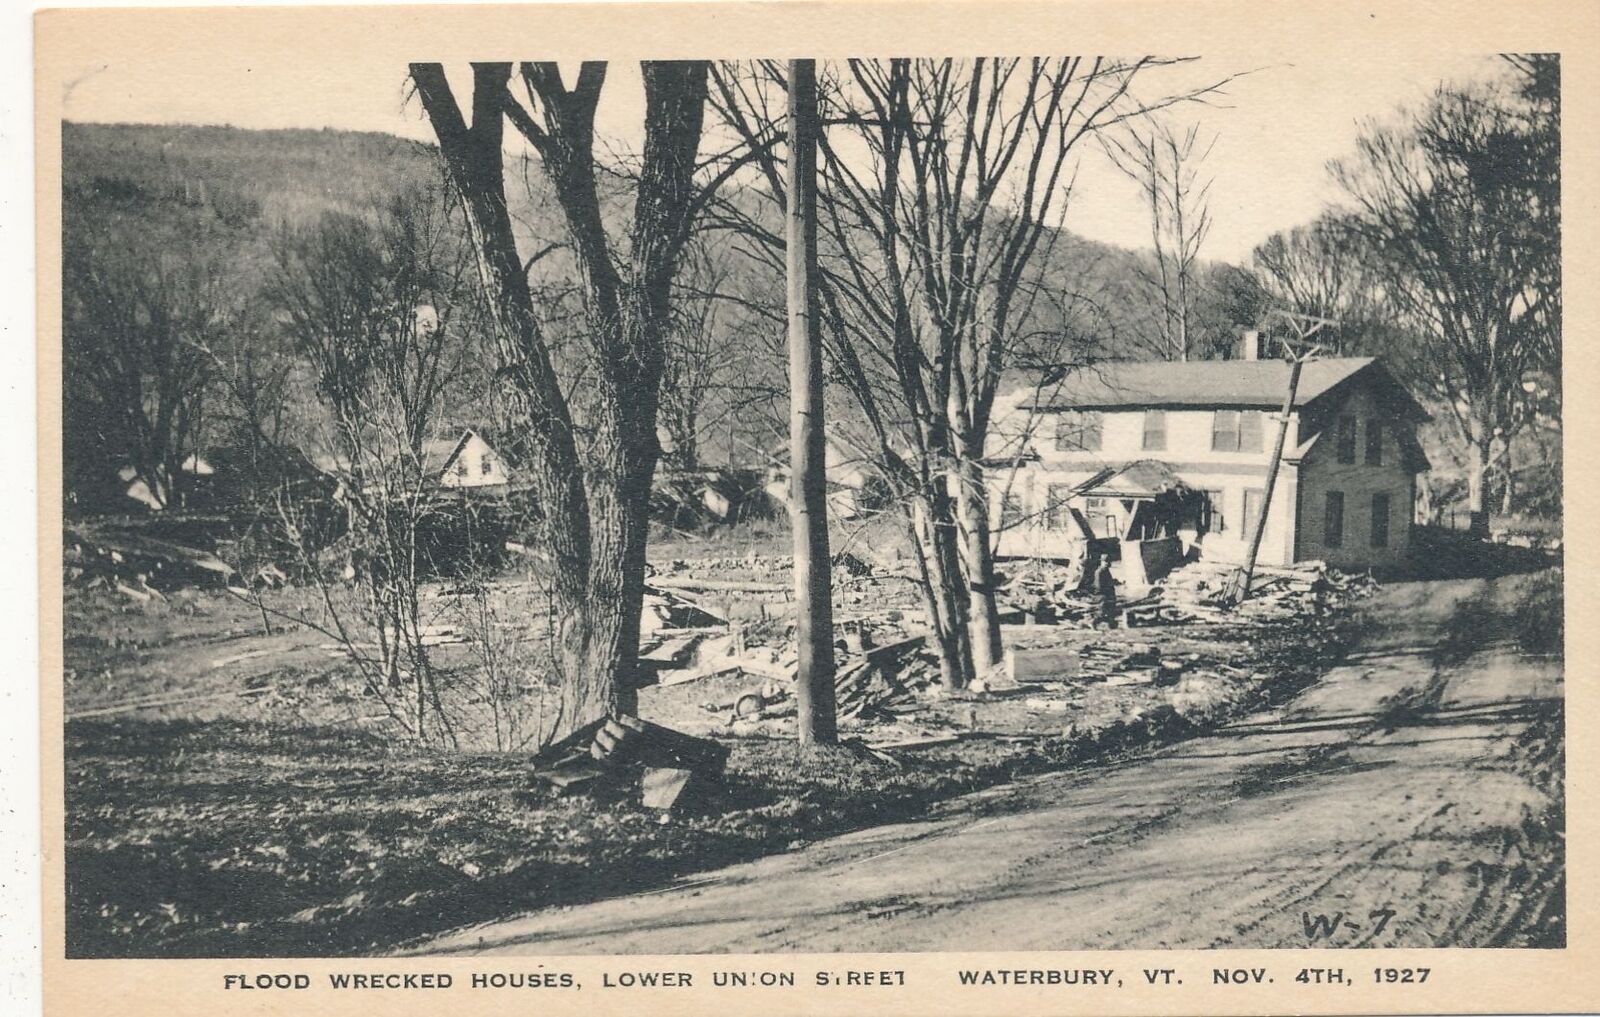 MONTPELIER VT - November 4, 1927 Flood Wrecked Houses On Lower Union Street